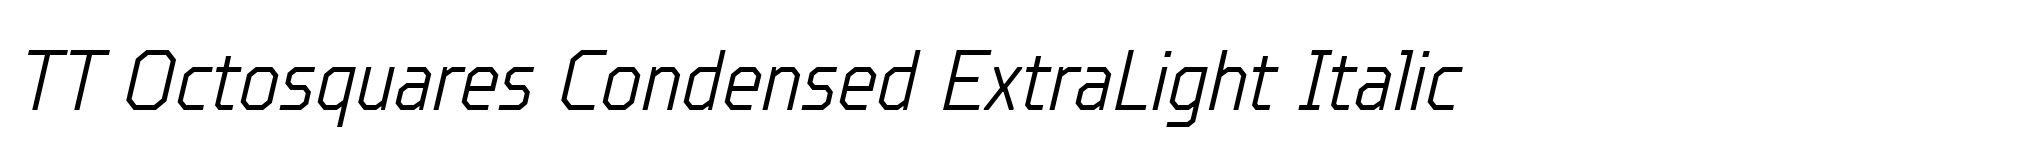 TT Octosquares Condensed ExtraLight Italic image